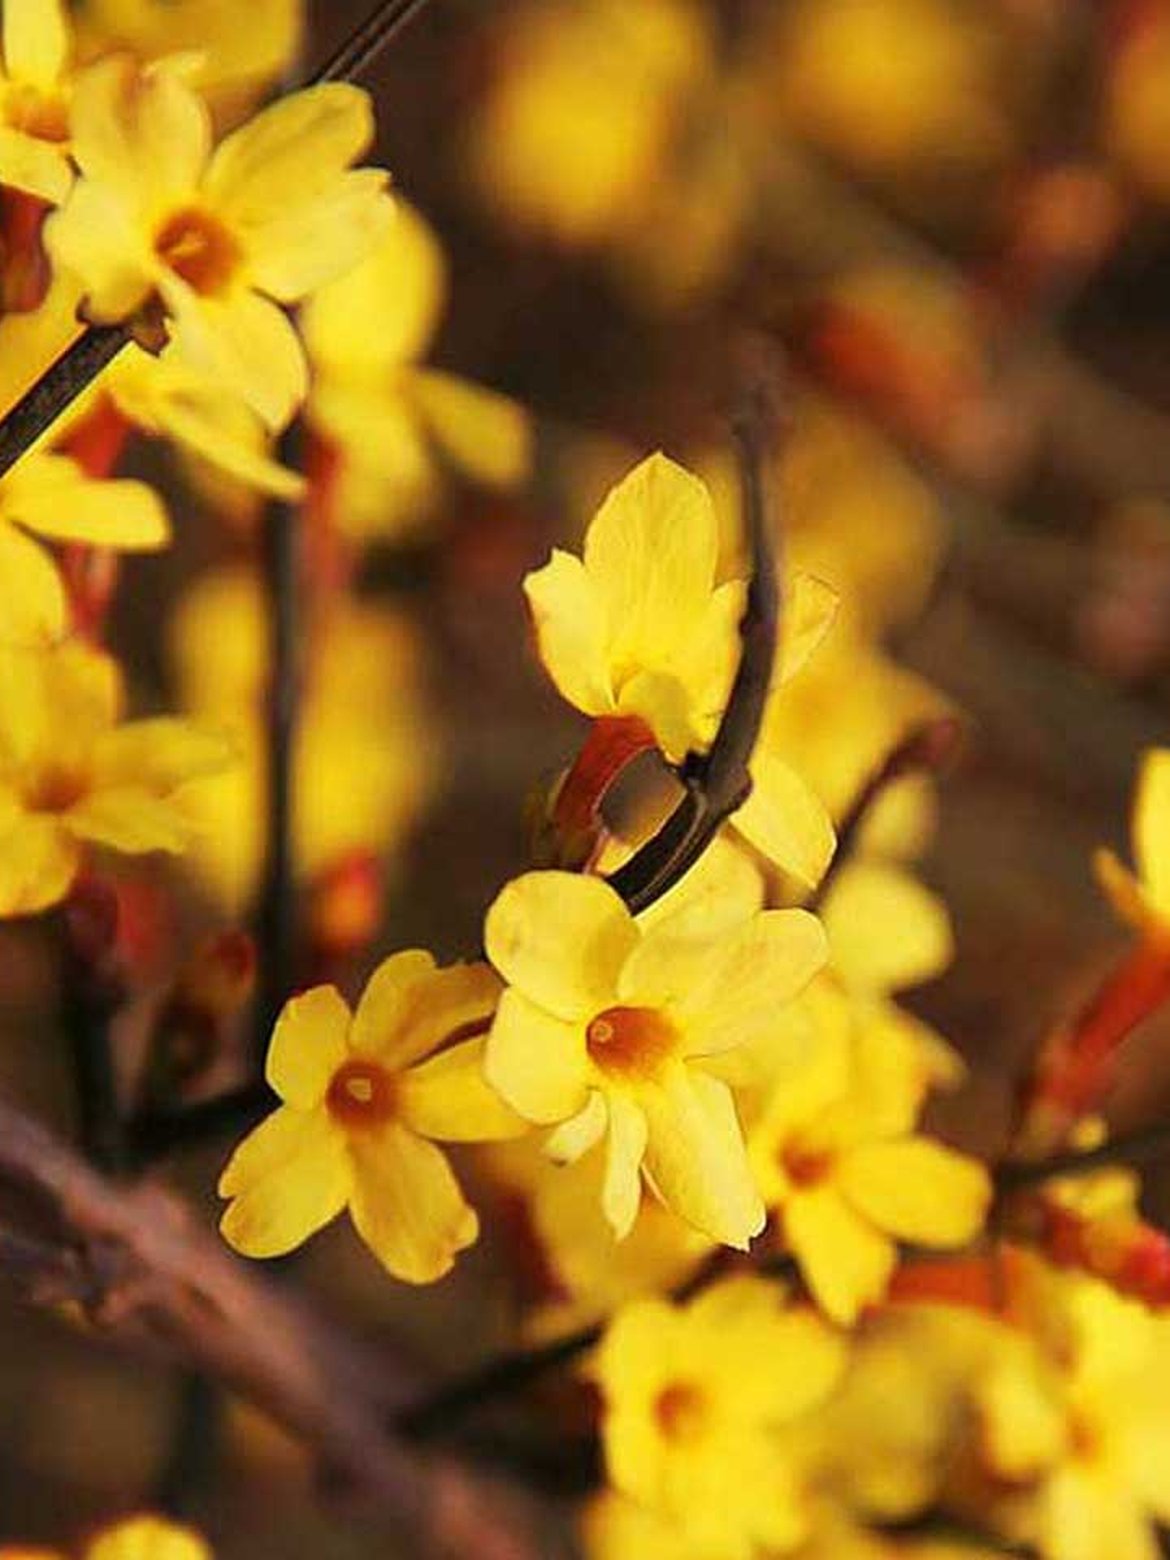 Article de blog: Les arbustes à floraison hivernale - Découvrez leurs besoins d’entretien et leurs particularités - Schilliger